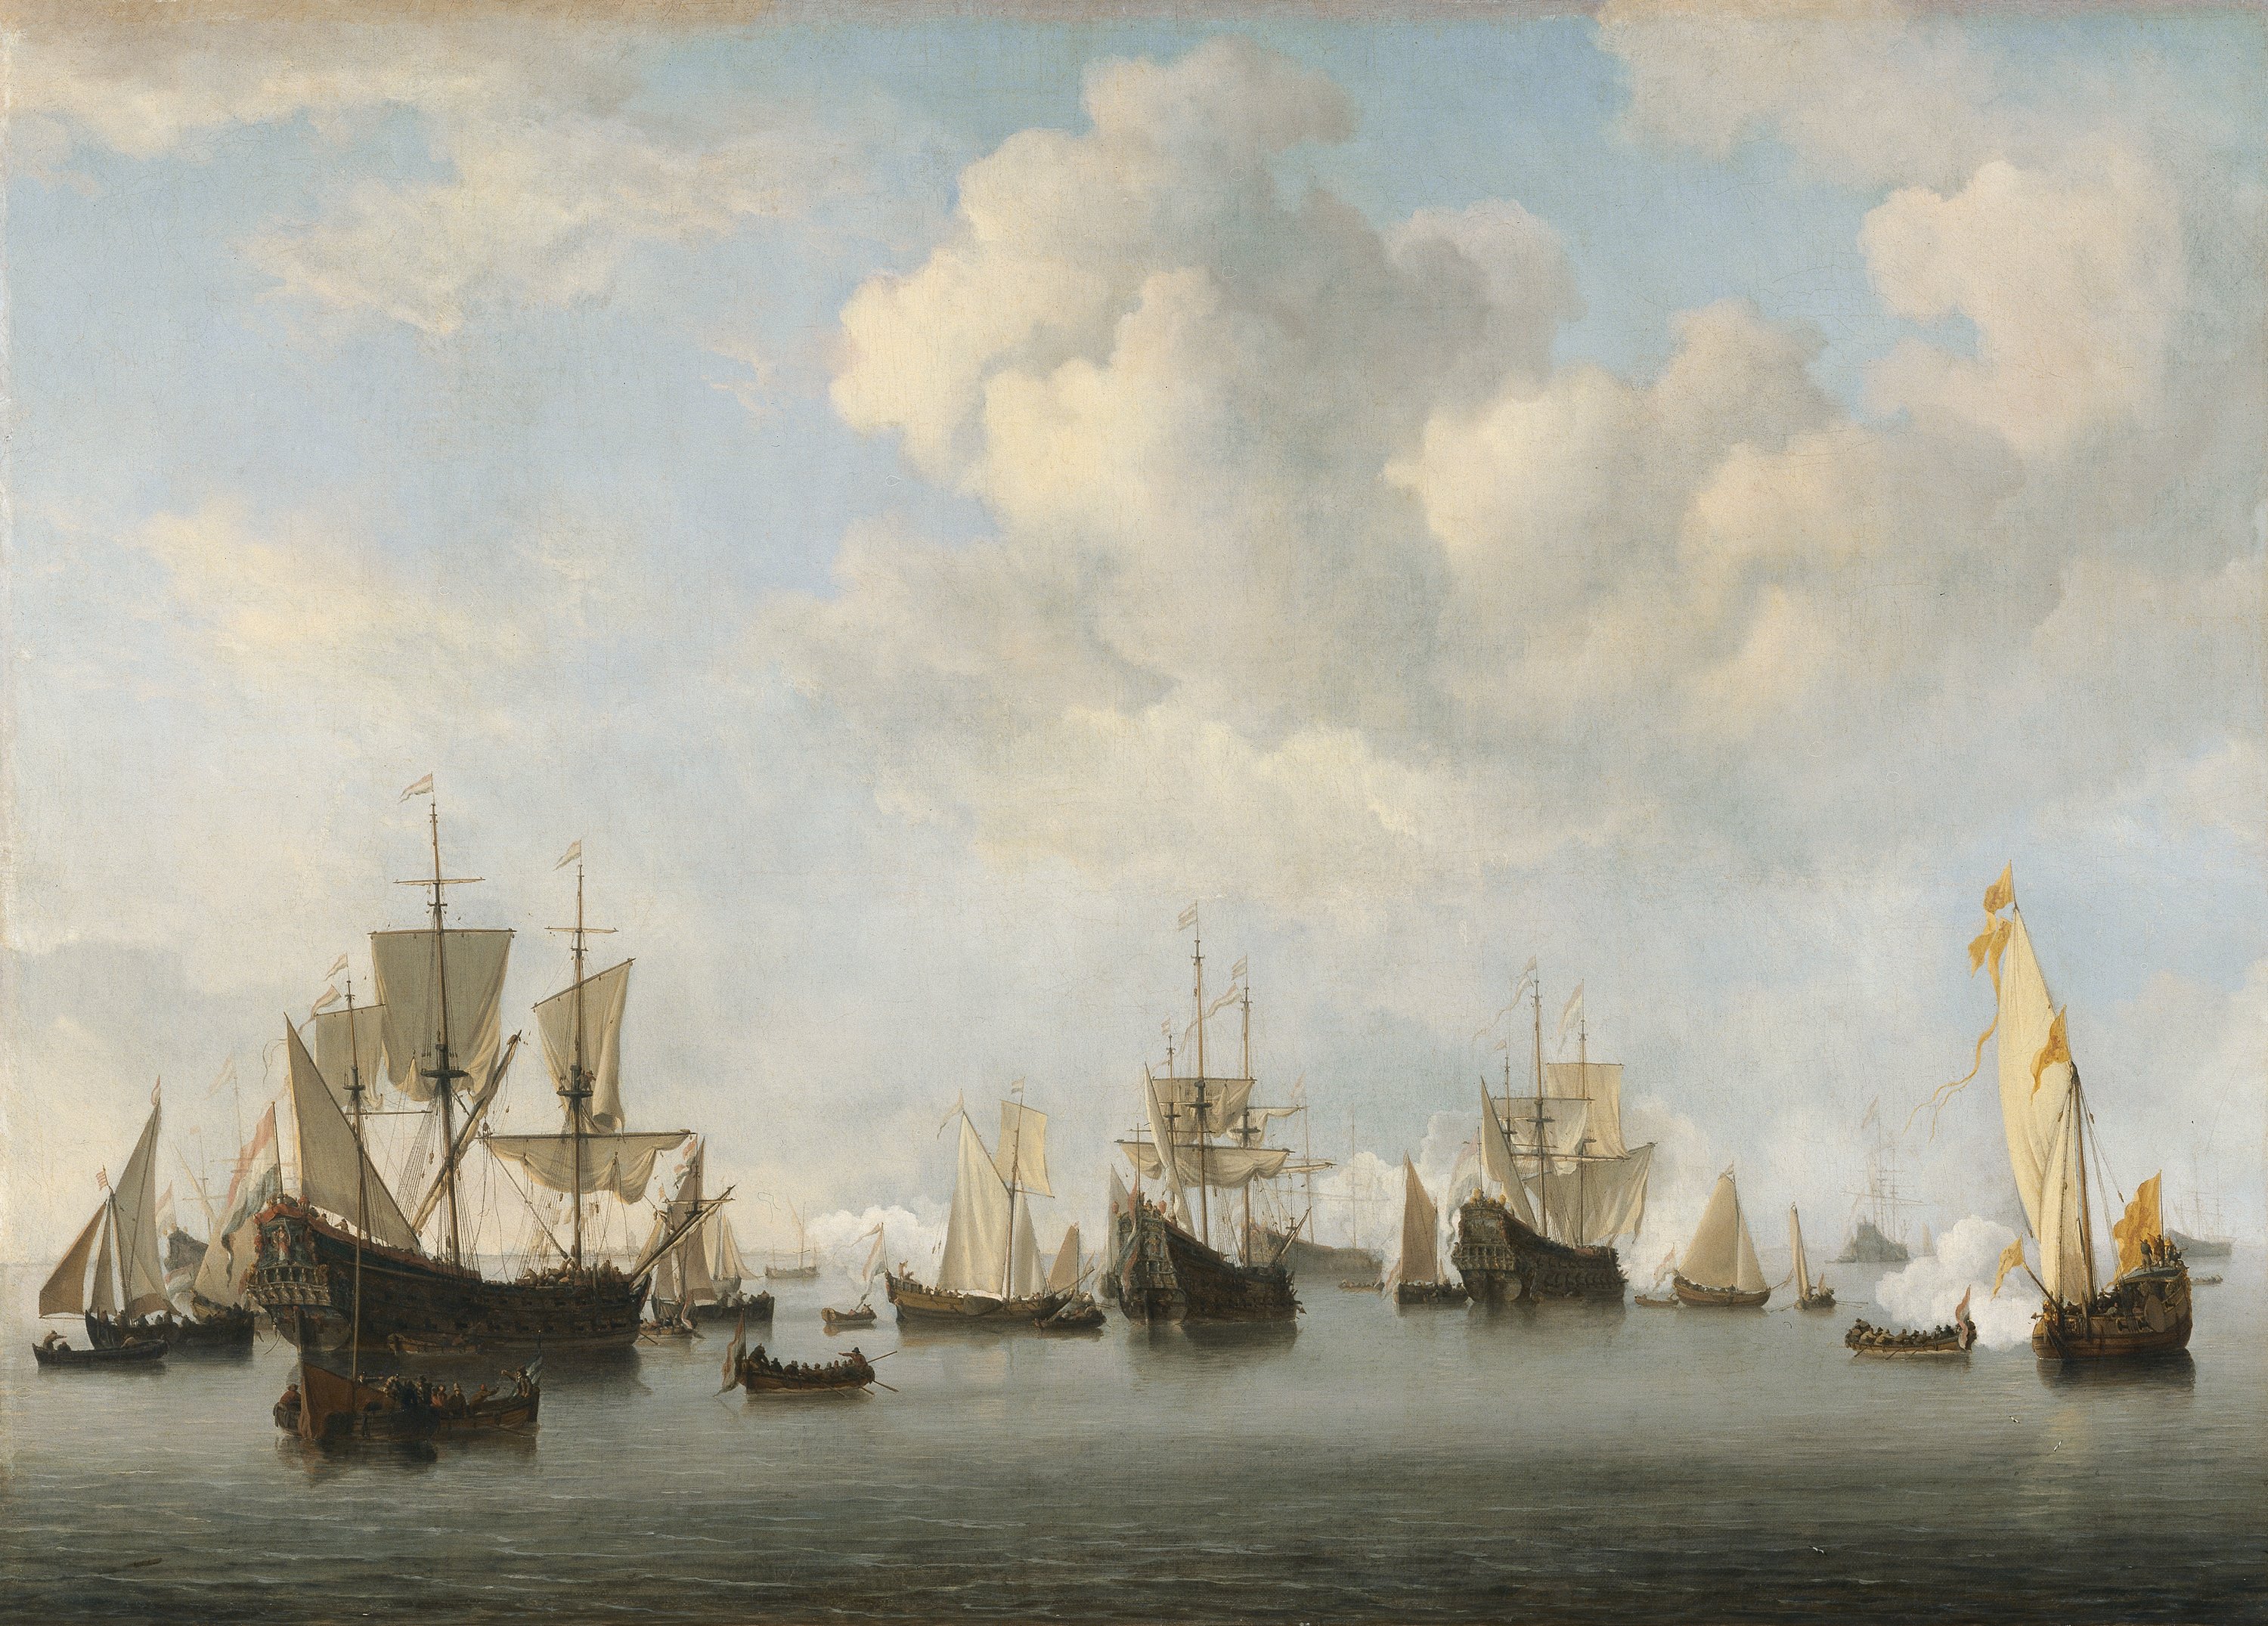 The Dutch Fleet in the Goeree Roads. La flota holandesa en de Goeree, c. 1672-1673